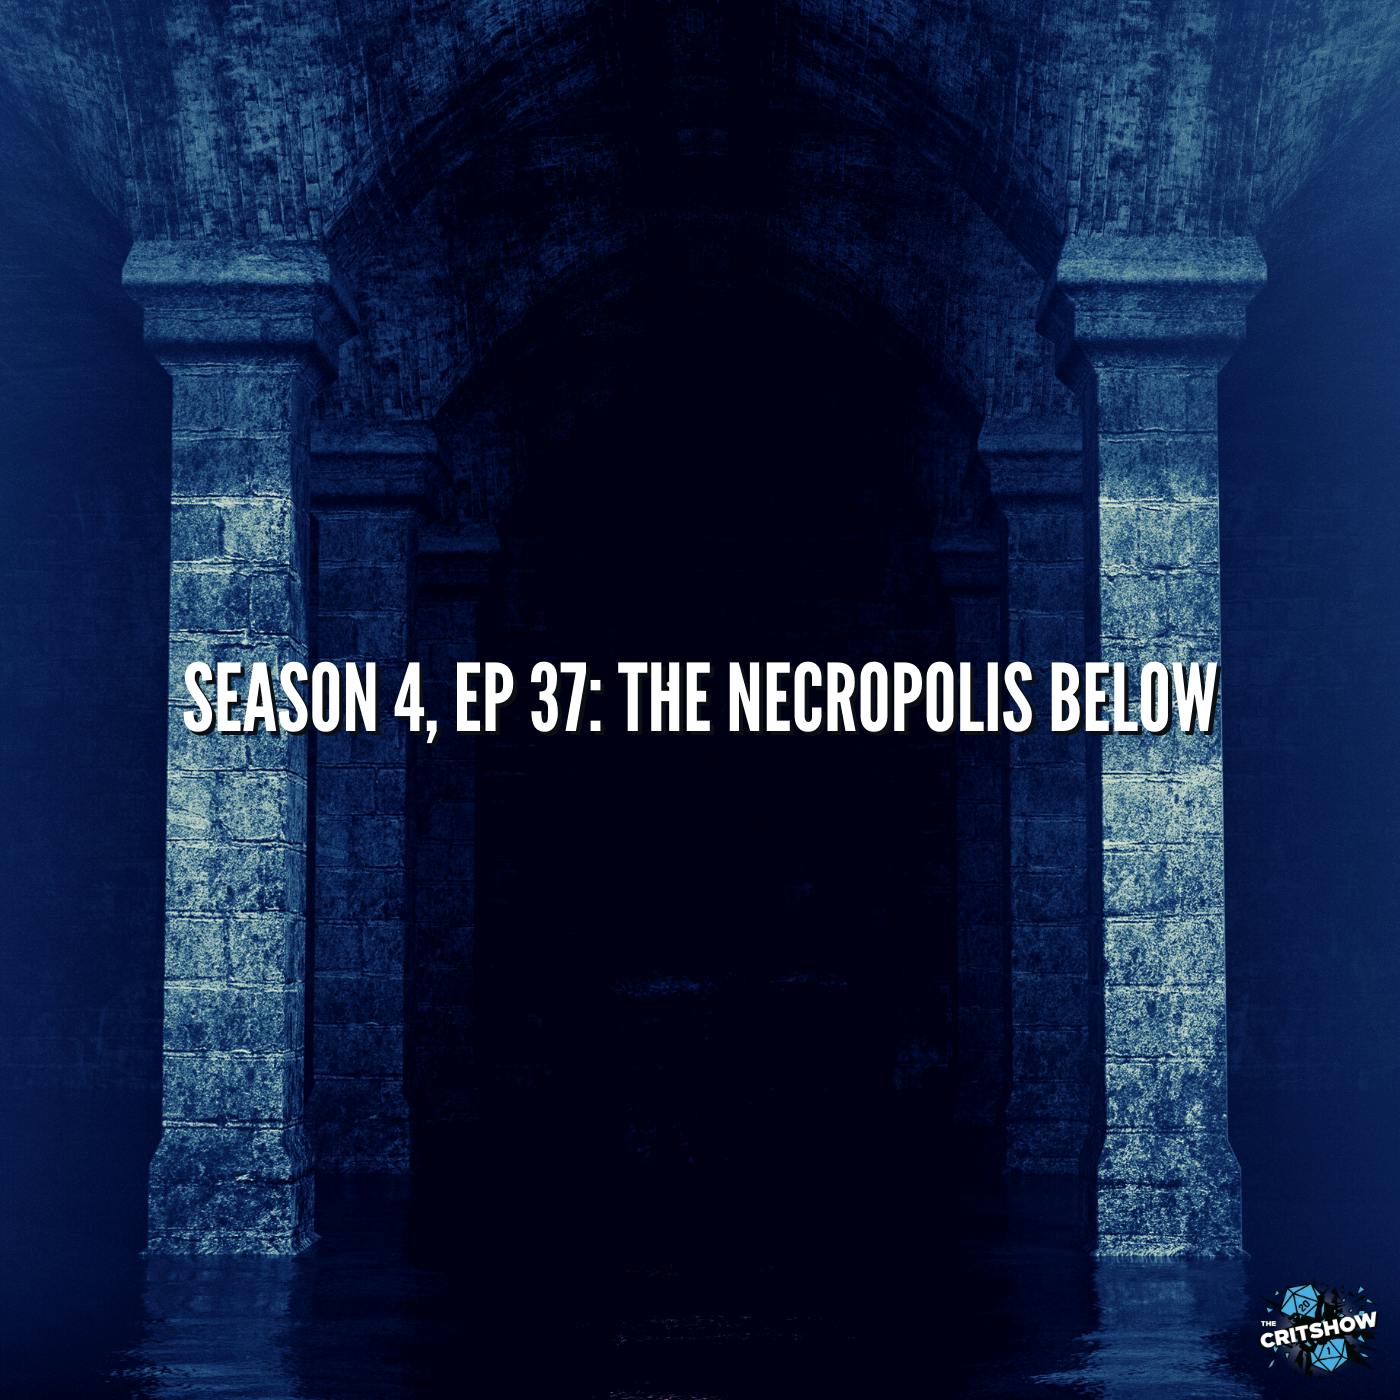 The Necropolis Below (S4, E37)